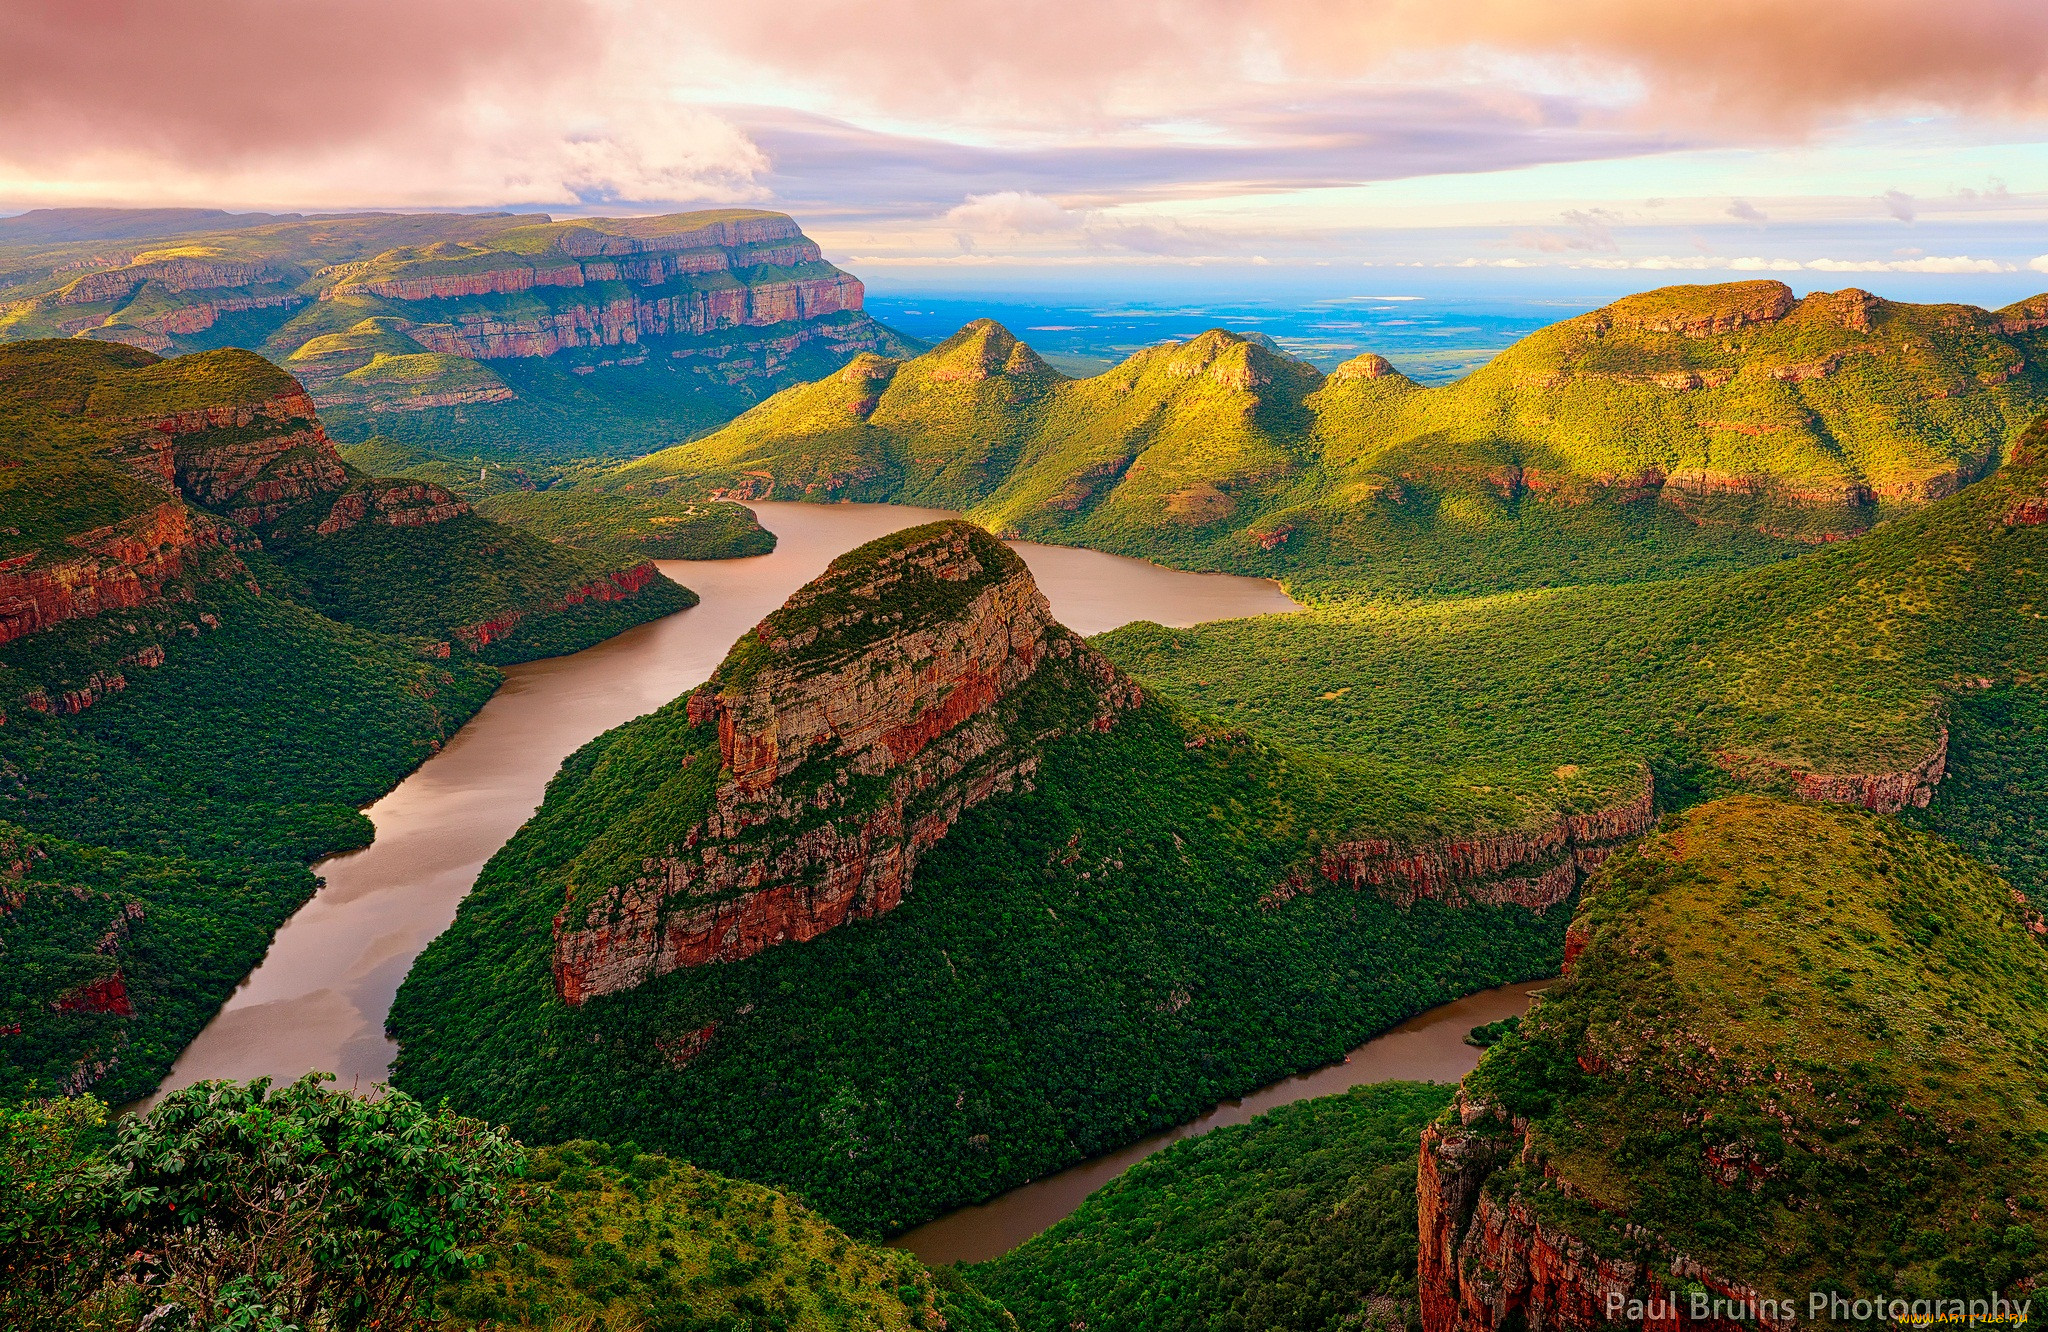 Большое разнообразие природы северной америки. Каньон реки Блайд ЮАР. Река Блайд Ривер. Каньон Блайд Ривер, Южная Африка. Мпумаланга ЮАР.